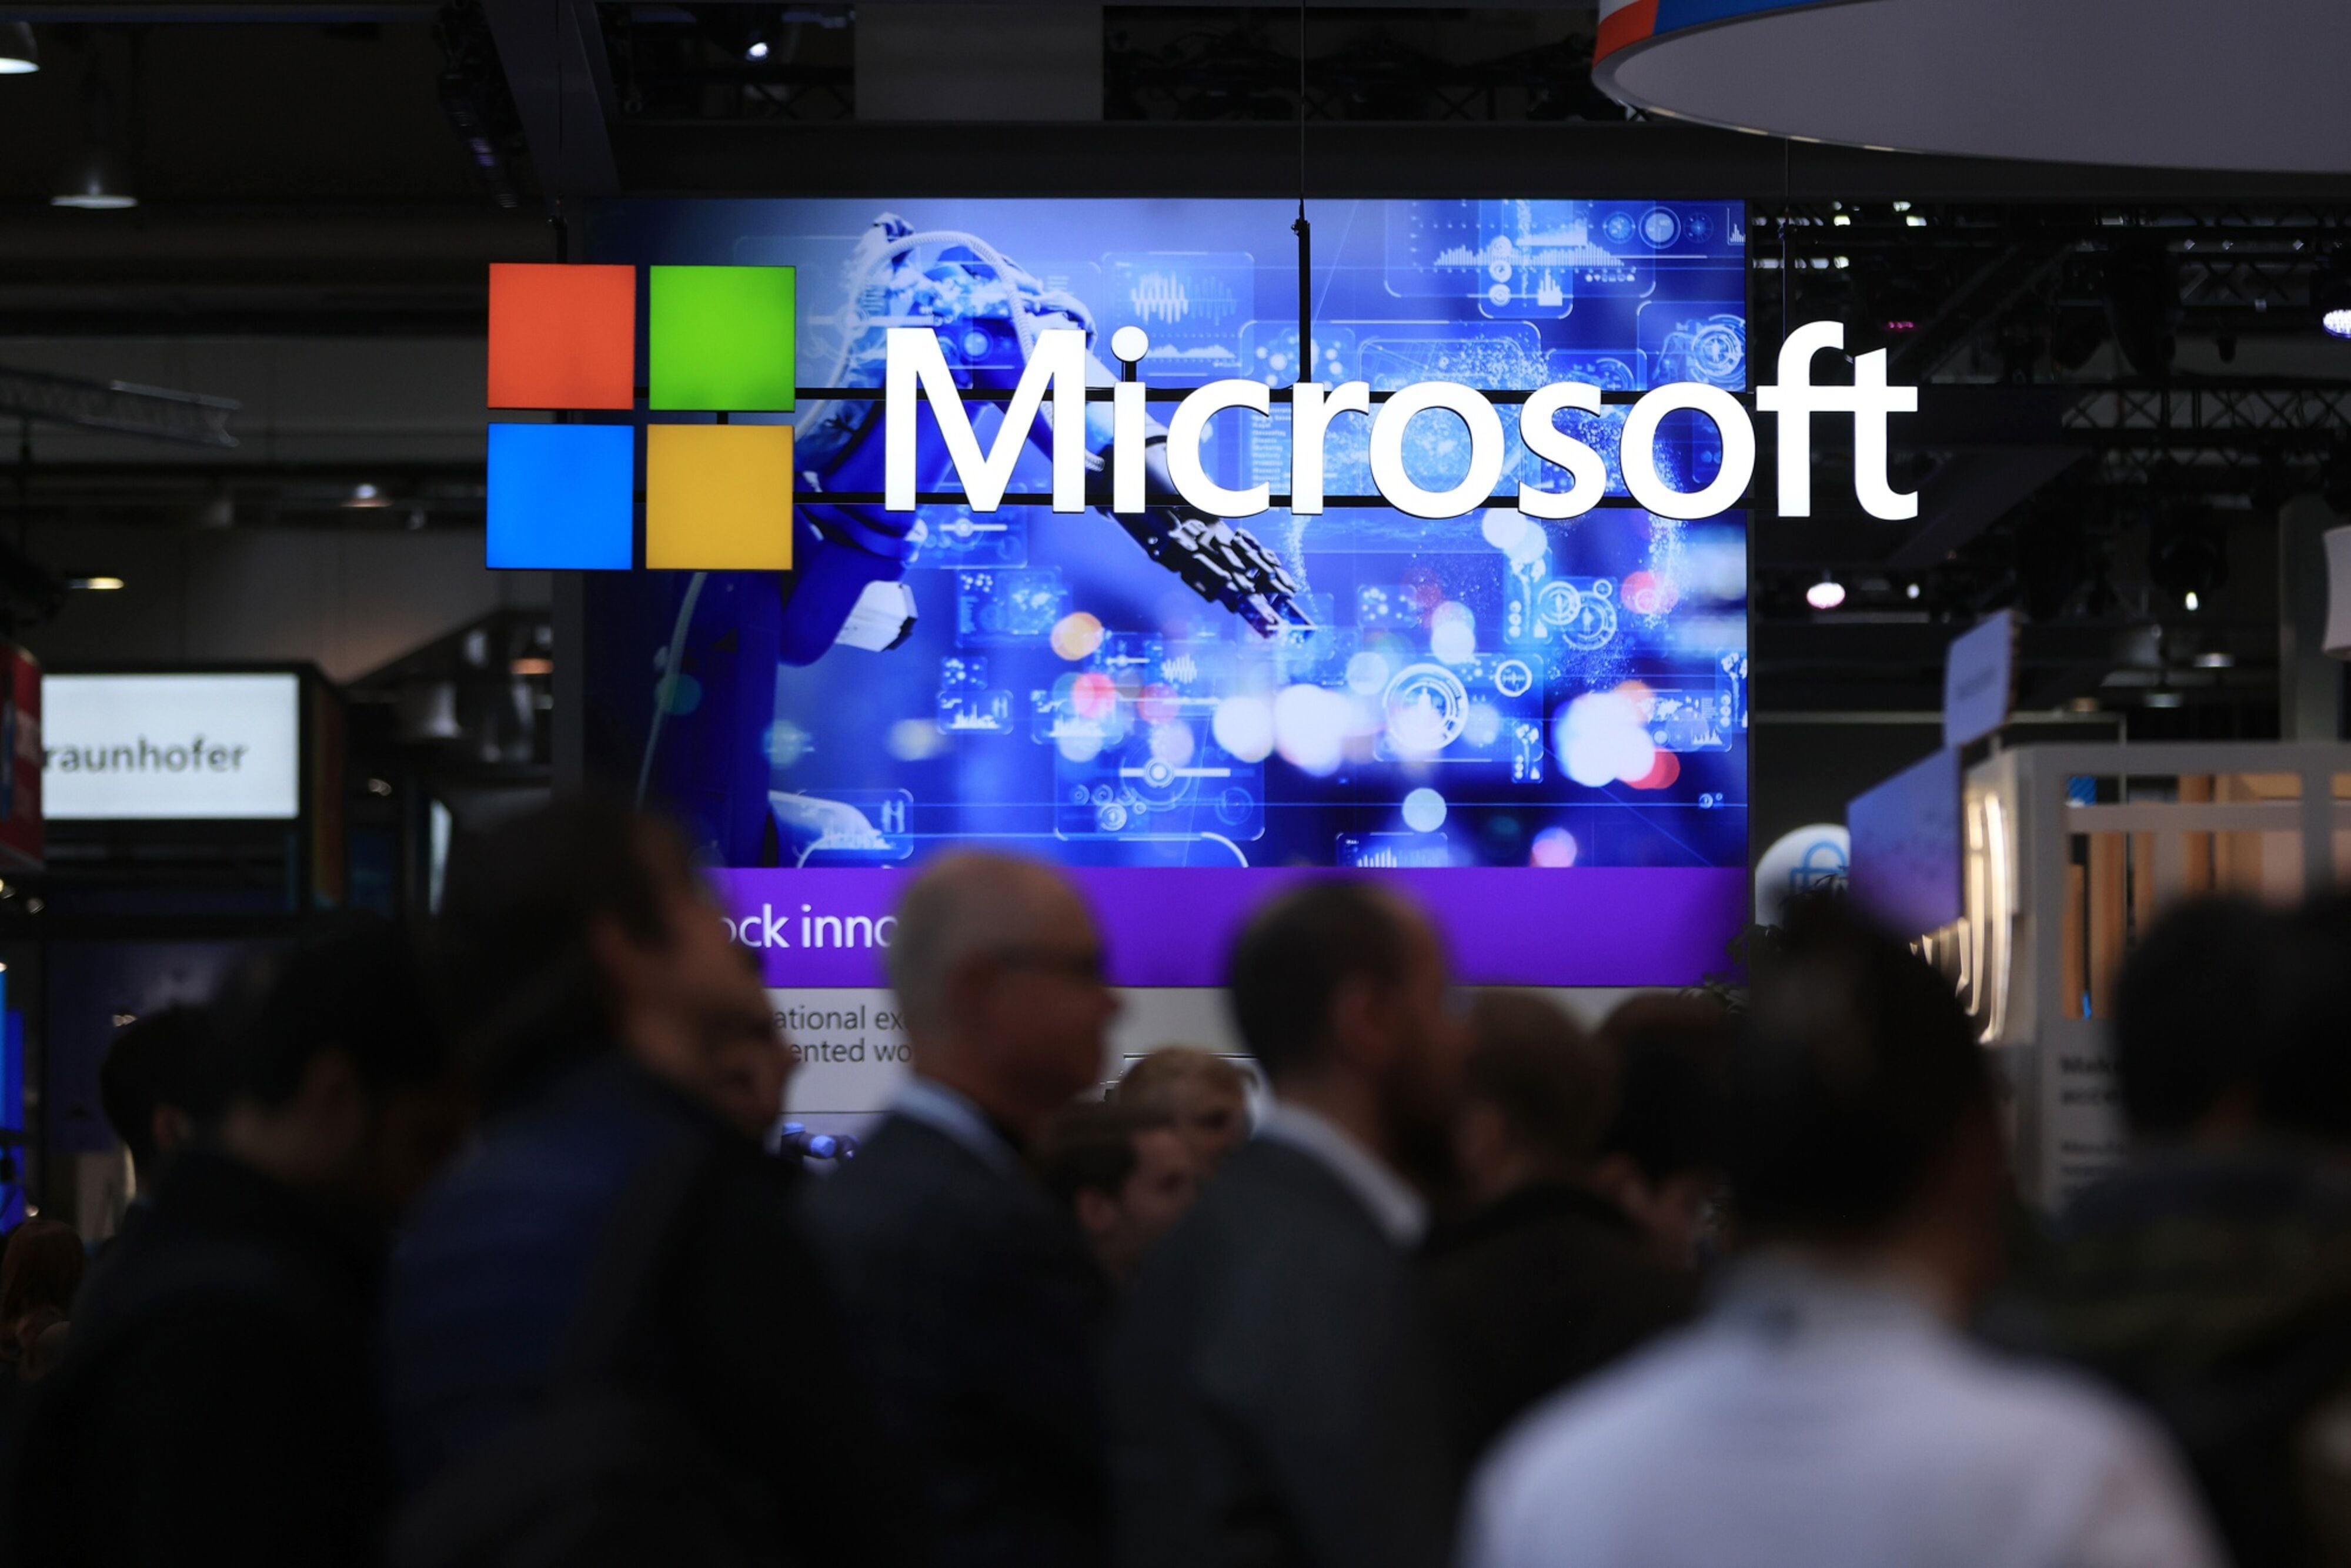 Falla en Microsoft tardará semanas en resolverse: ‘No estamos hablando de horas’, advierte experto